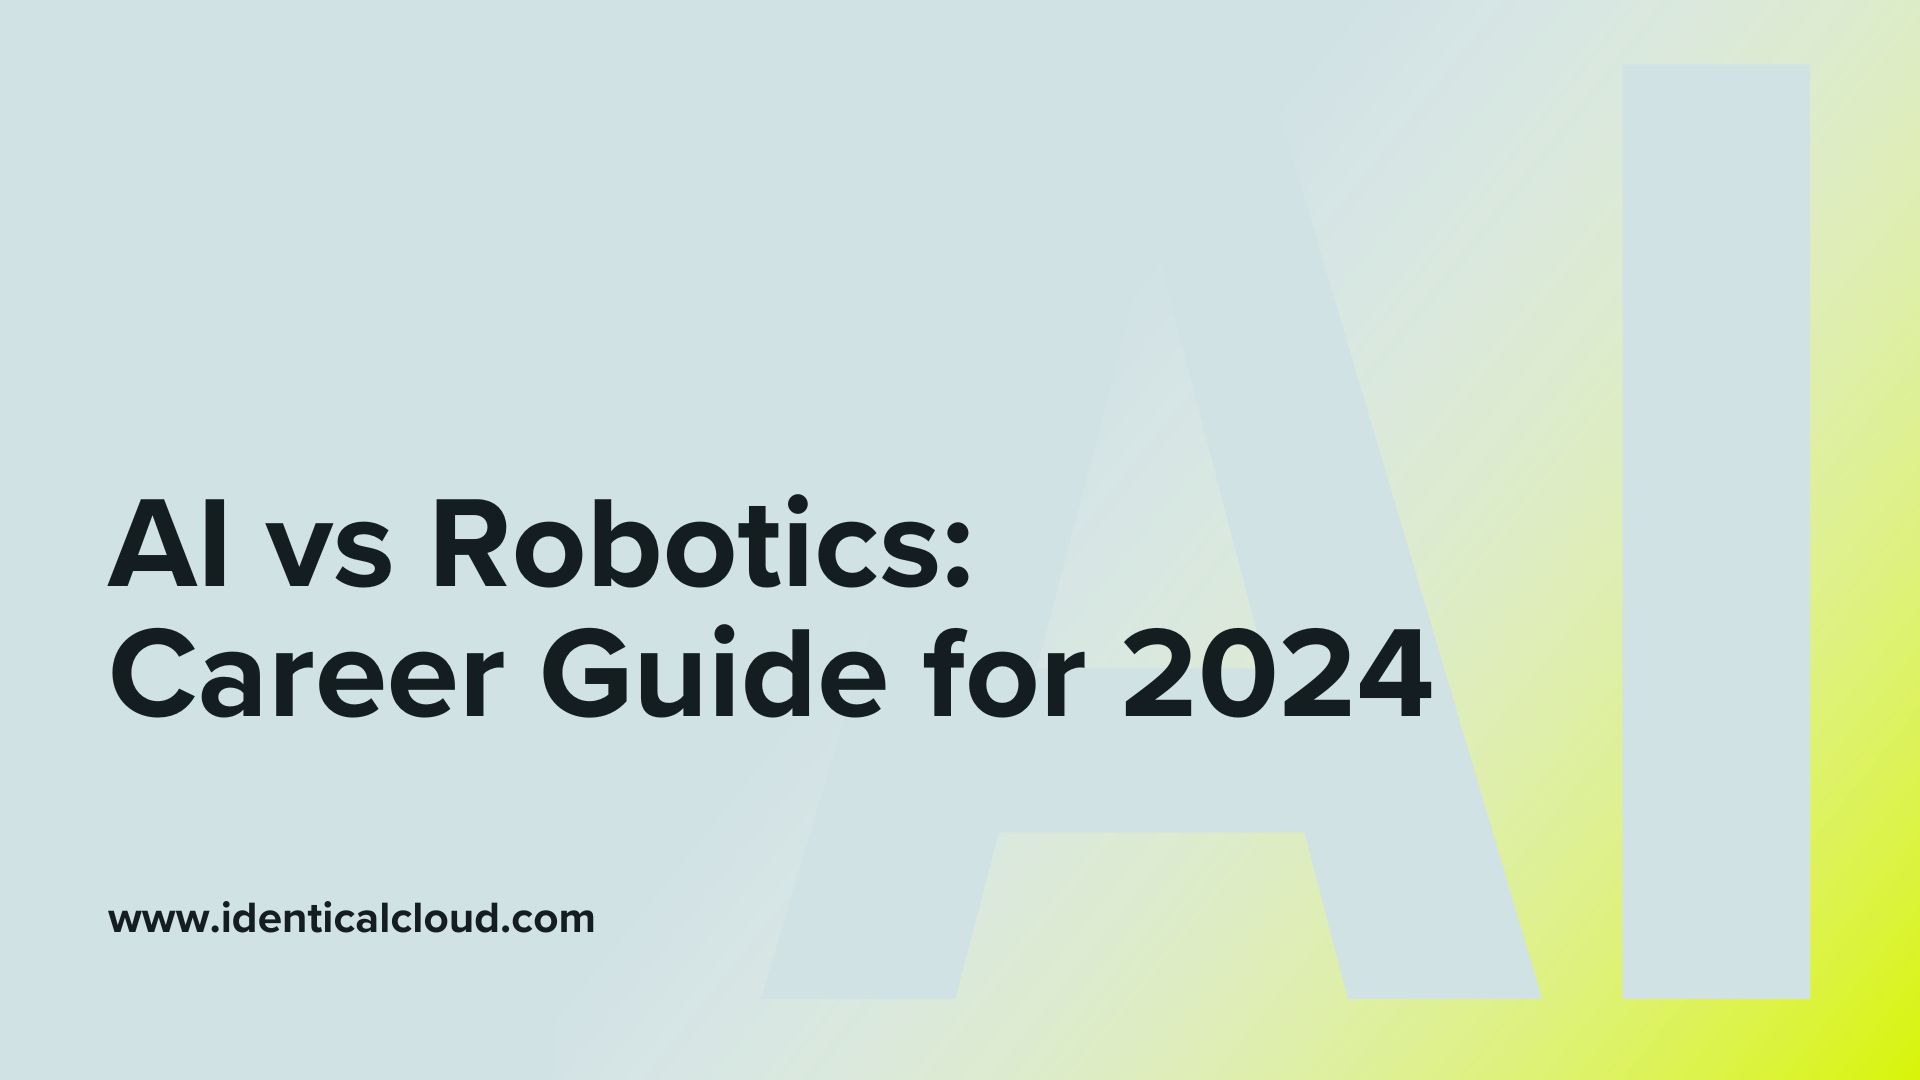 AI vs Robotics: Career Guide for 2024